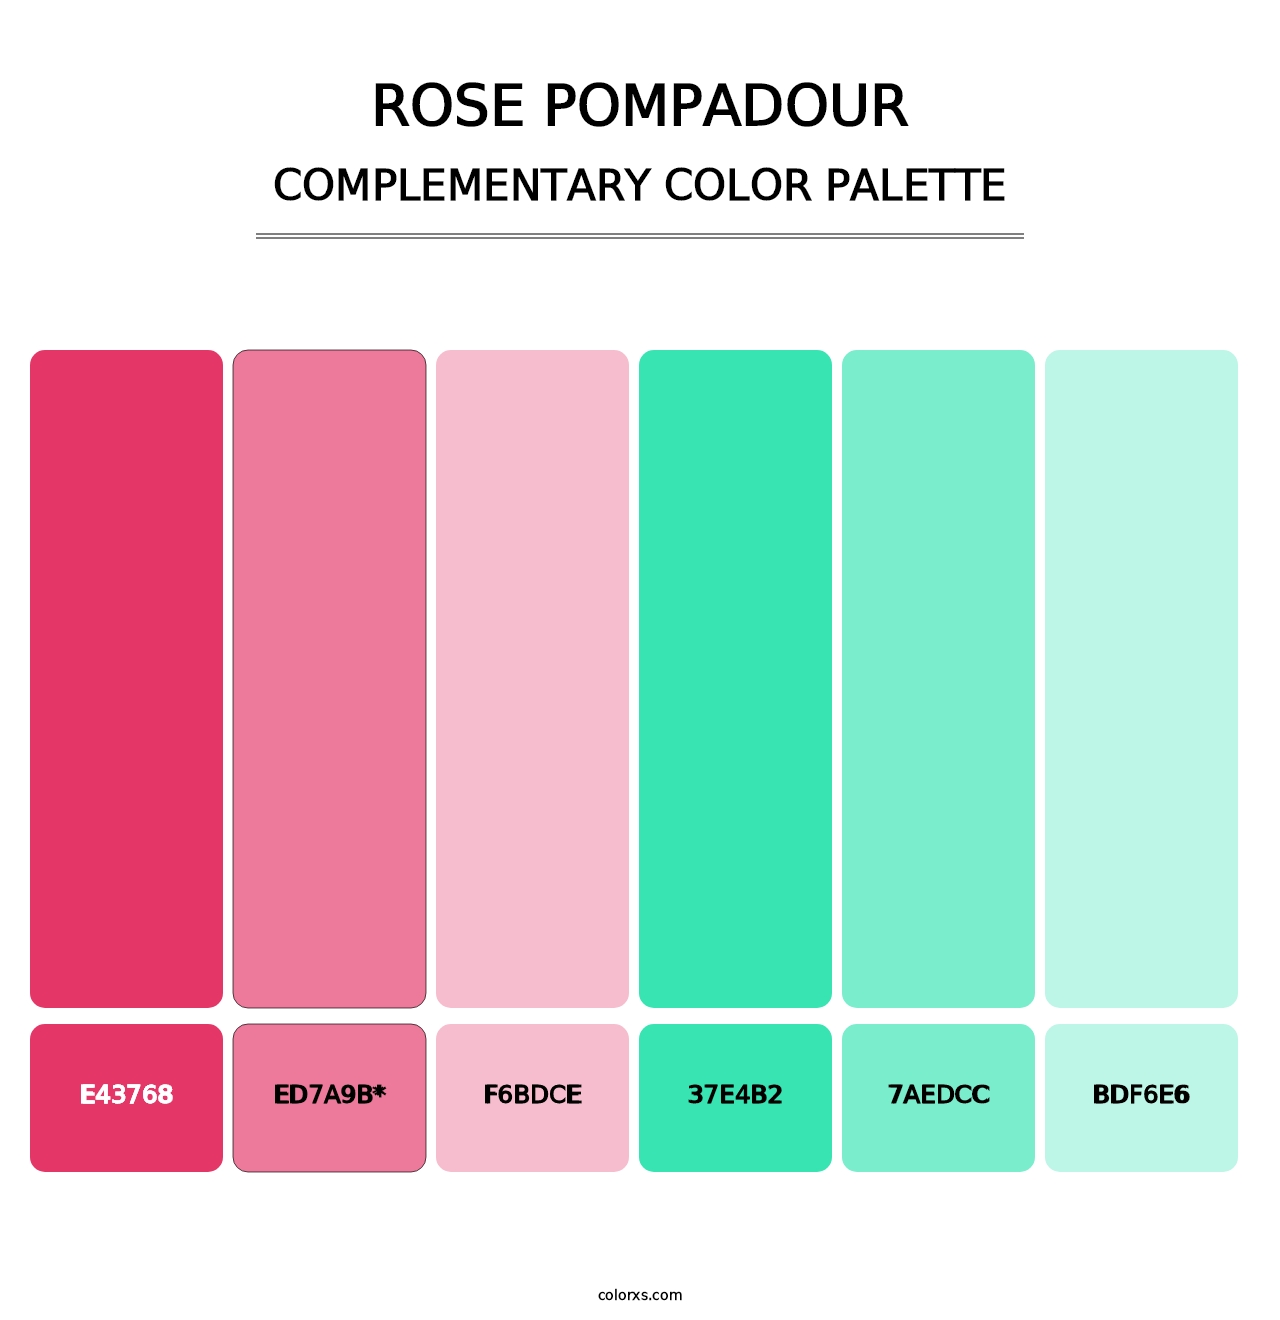 Rose Pompadour - Complementary Color Palette